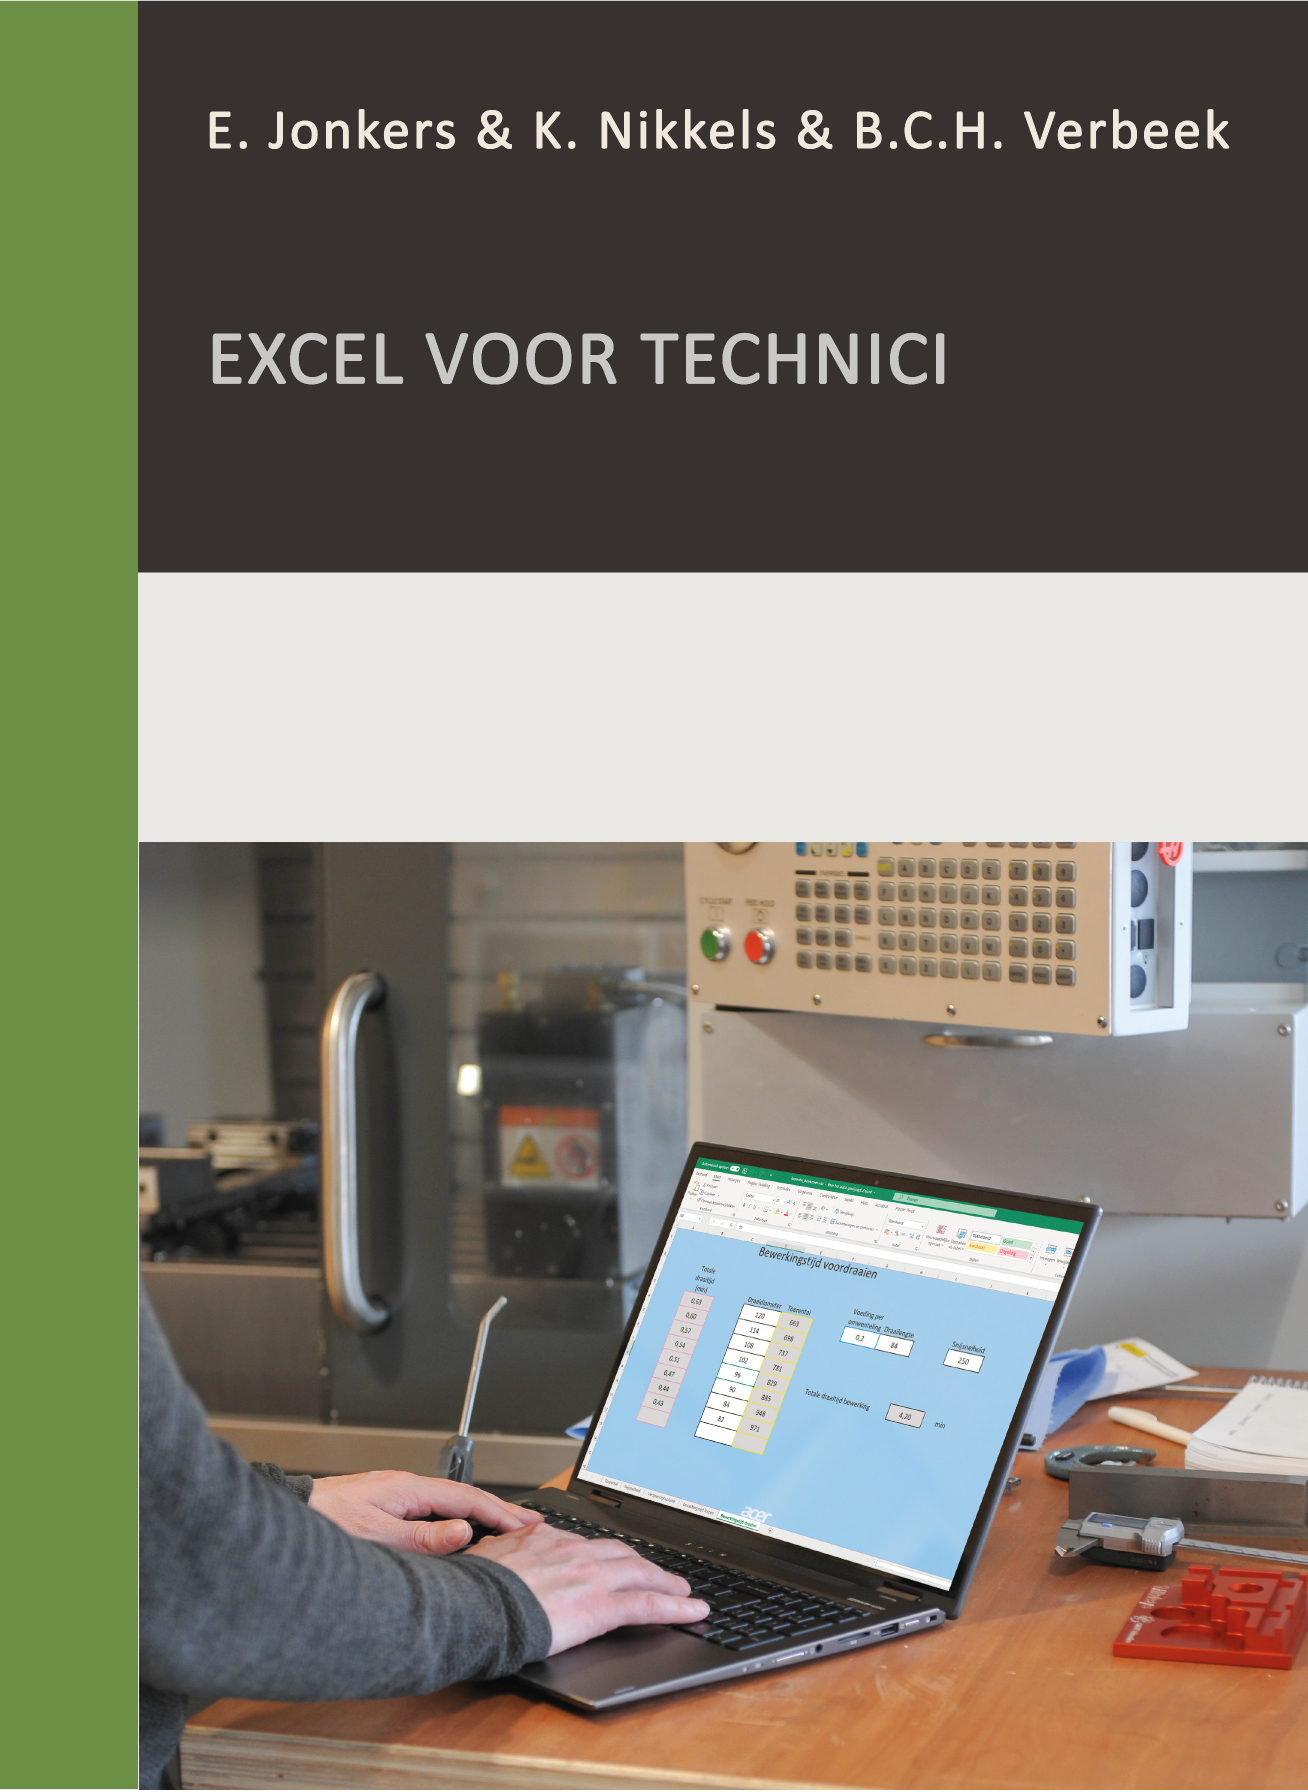 Excel voor technici's thumbnail image